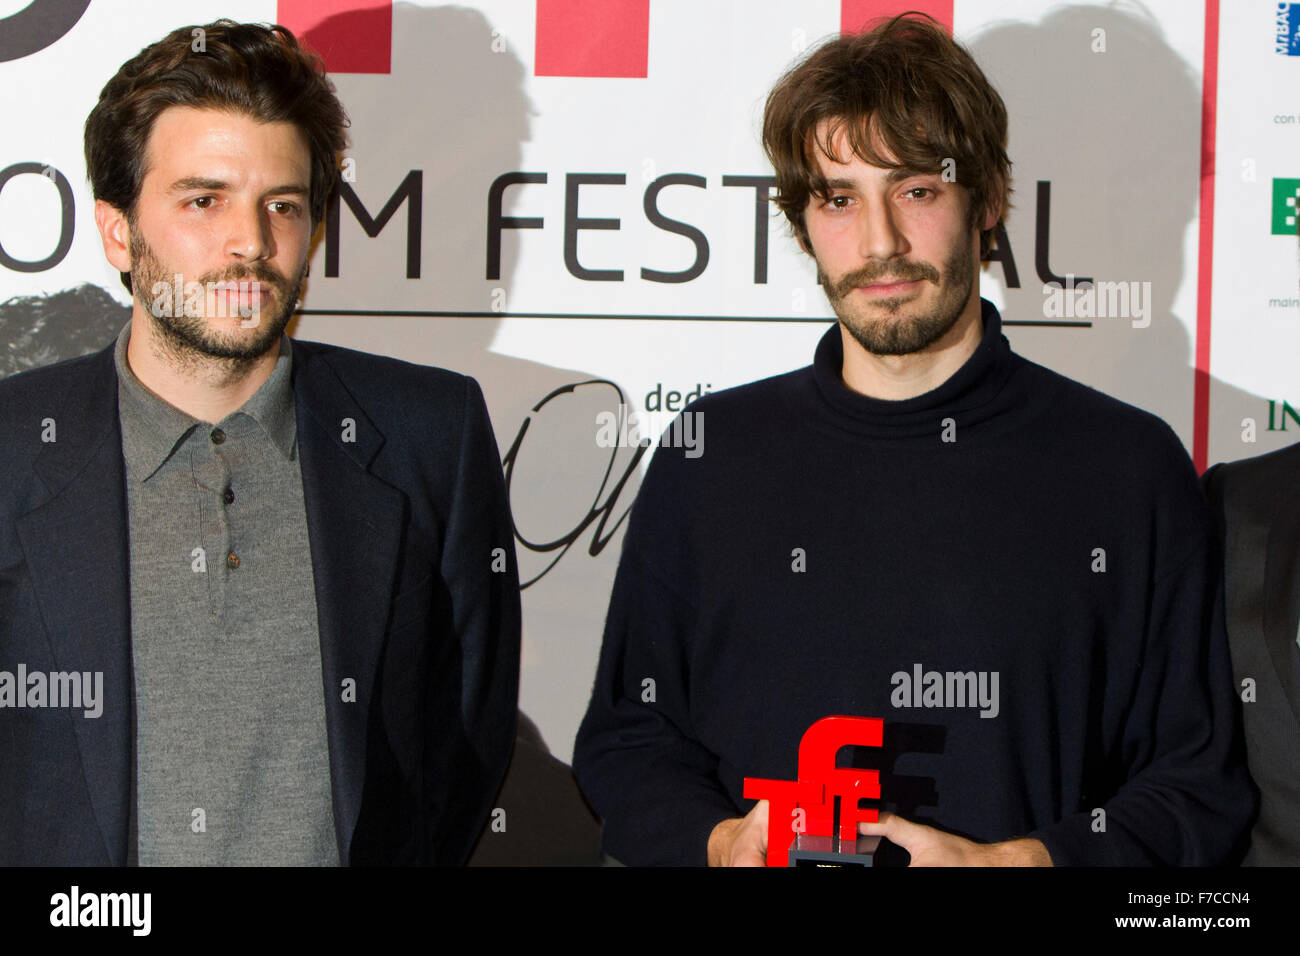 Torino, Italy. 28th November 2015. Film directors Matteo Zoppis (right) and Alessio Rigo de Righi (left) receive award at Torino Film Festival Stock Photo